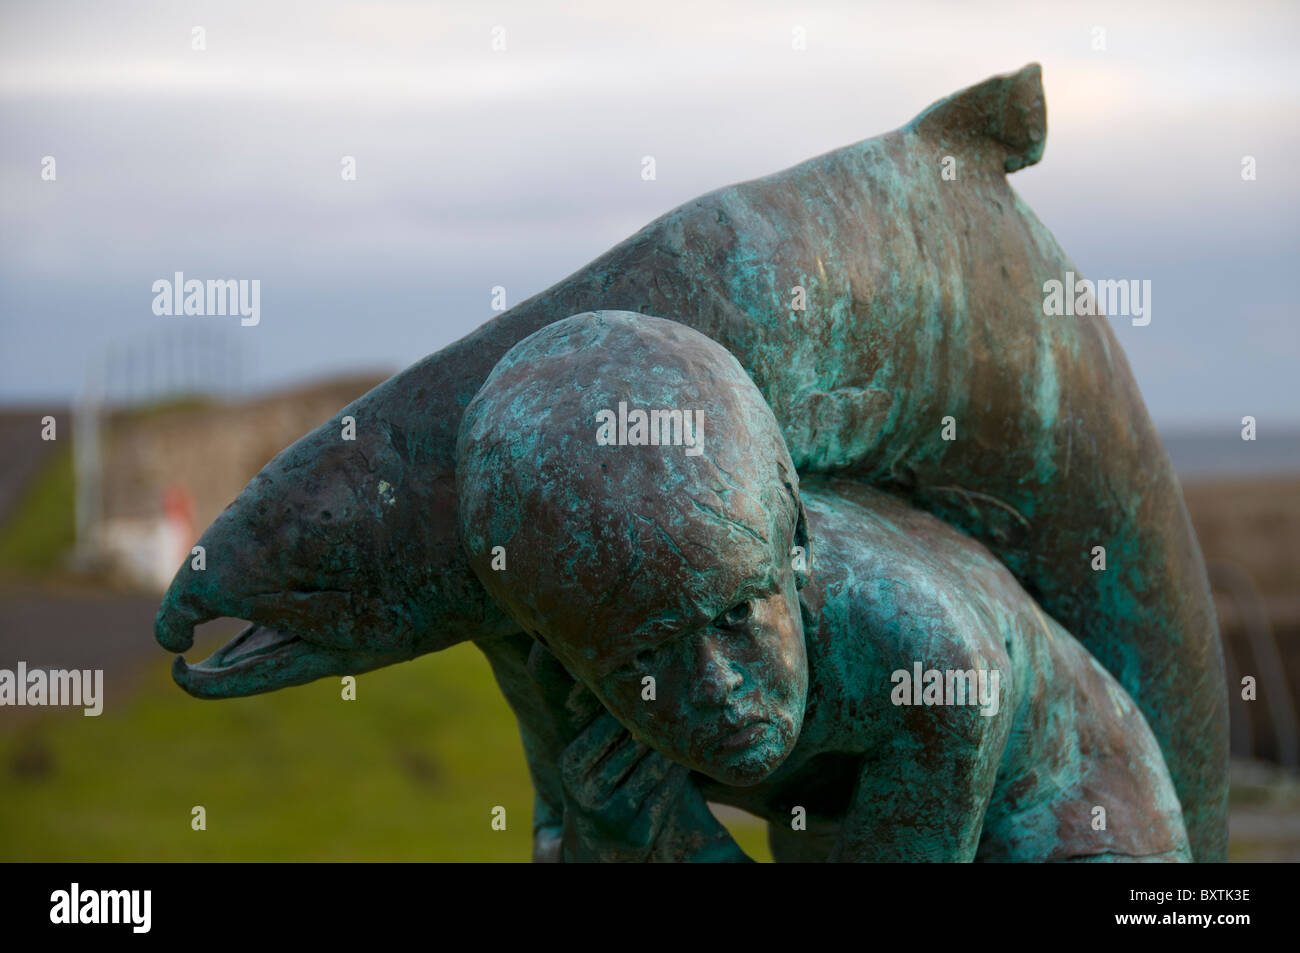 "Kenn und der Lachs" Statue bei Dunbeath, Caithness, Schottland, UK.  Eine Hommage an den Schriftsteller Neil M. Gunn Stockfoto